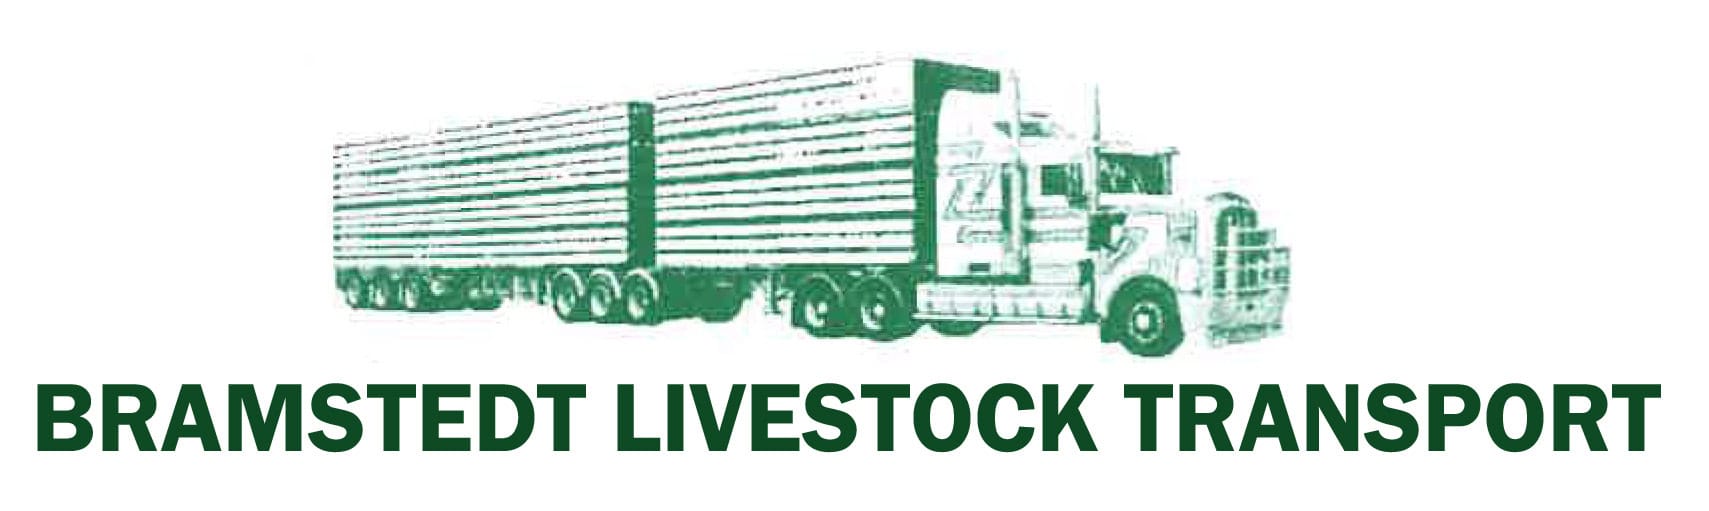 Bramstedt Livestock Transport